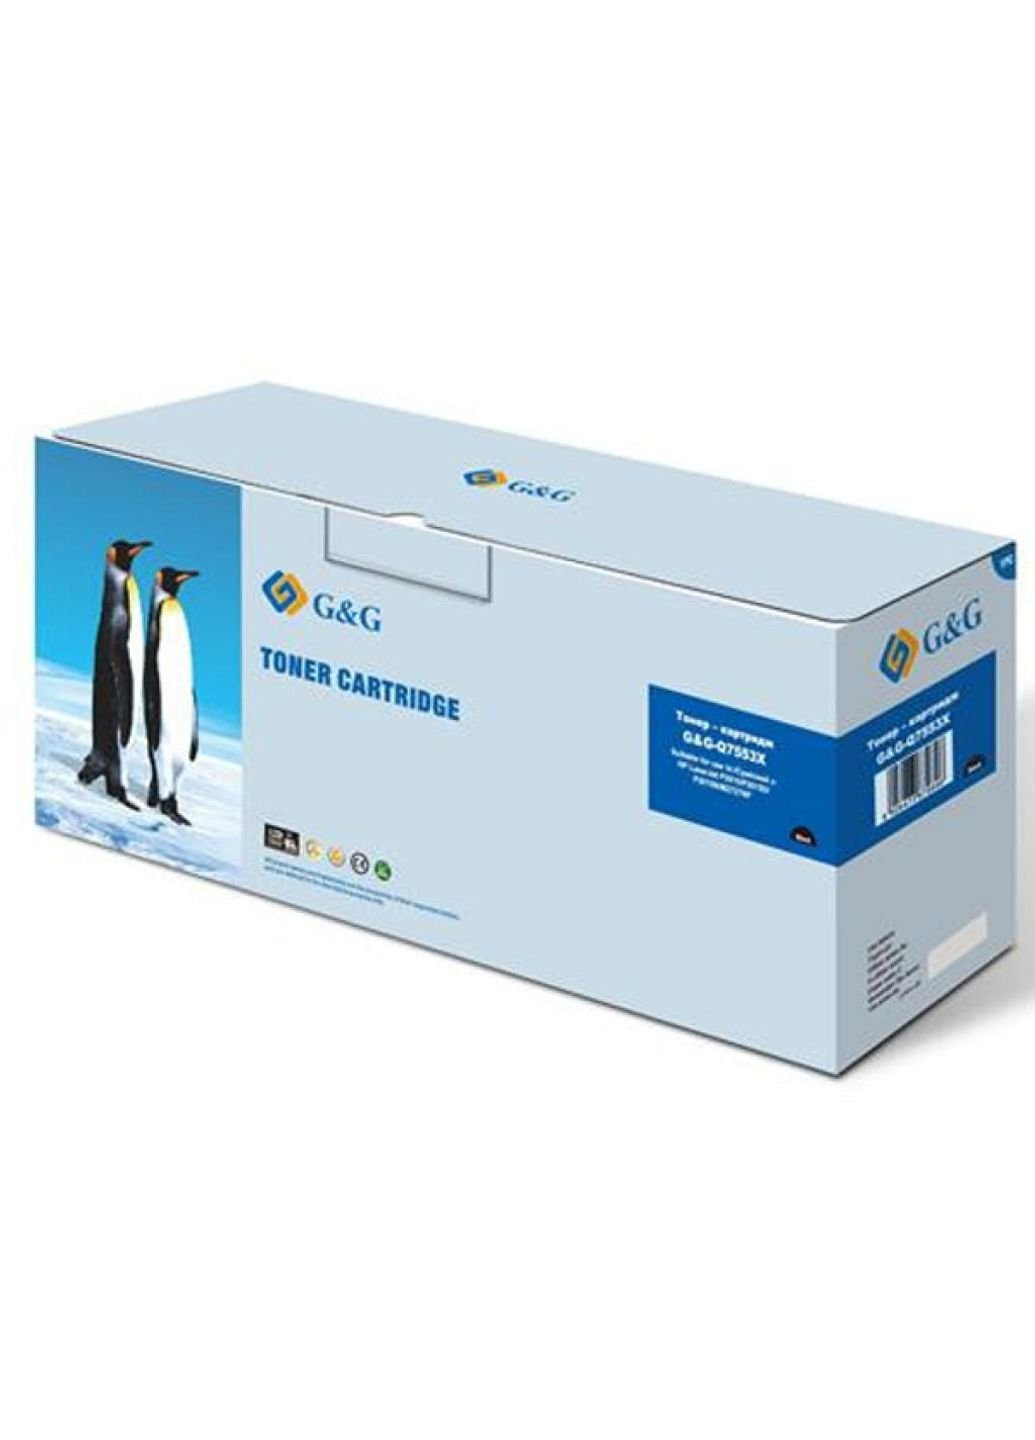 Картридж G & G для HP LJ P2014 / P2015 series, LJ M2727nf series (max) Black (G & G-Q7553X) G&G для hp lj p2014/p2015 series, lj m2727nf series (m (247616400)